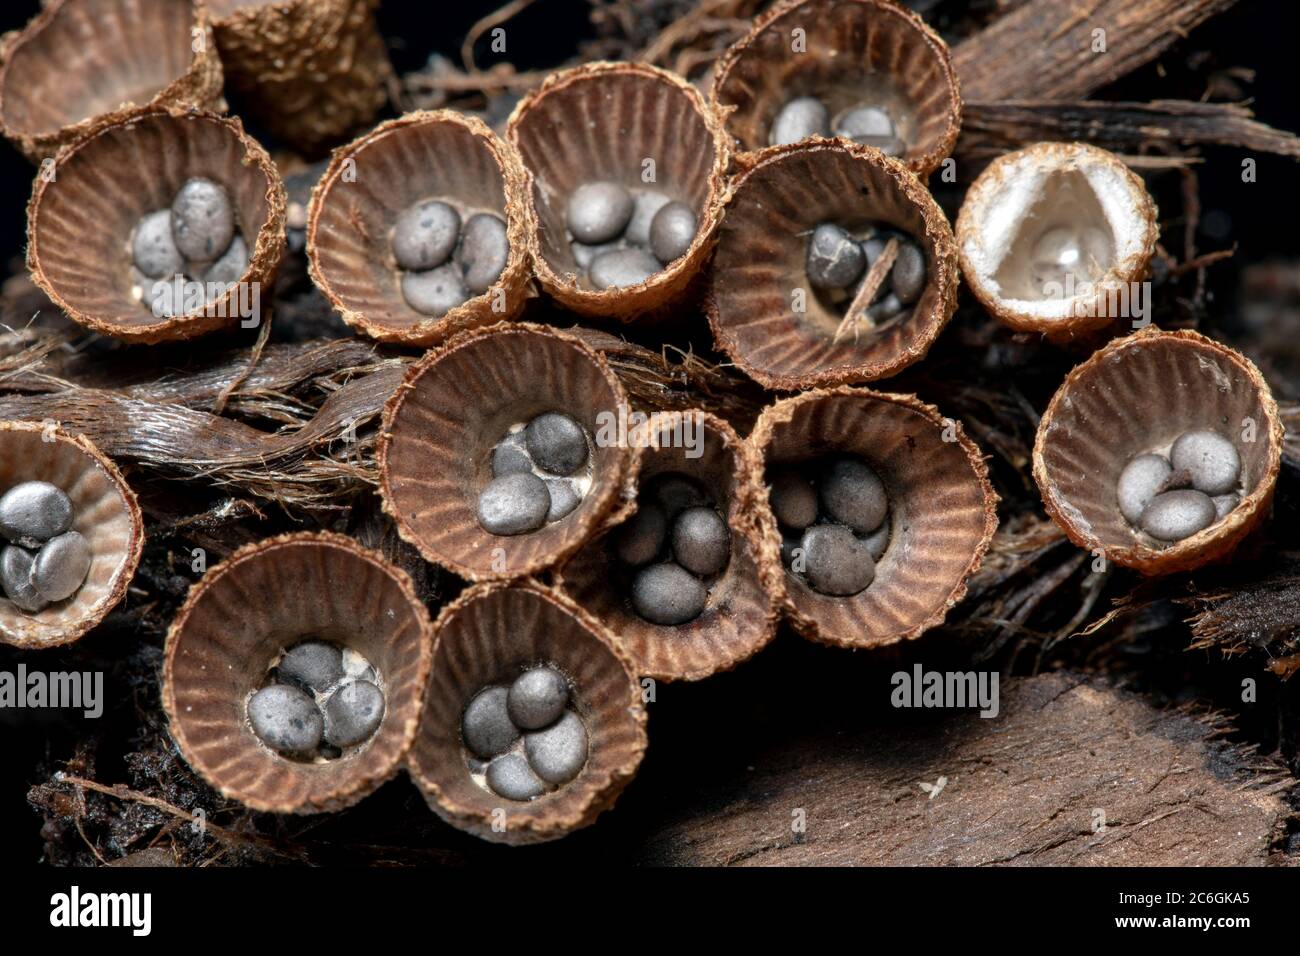 Close-up of bird's nest fungi (Cyathus striatus) - Brevard, North Carolina, USA Stock Photo